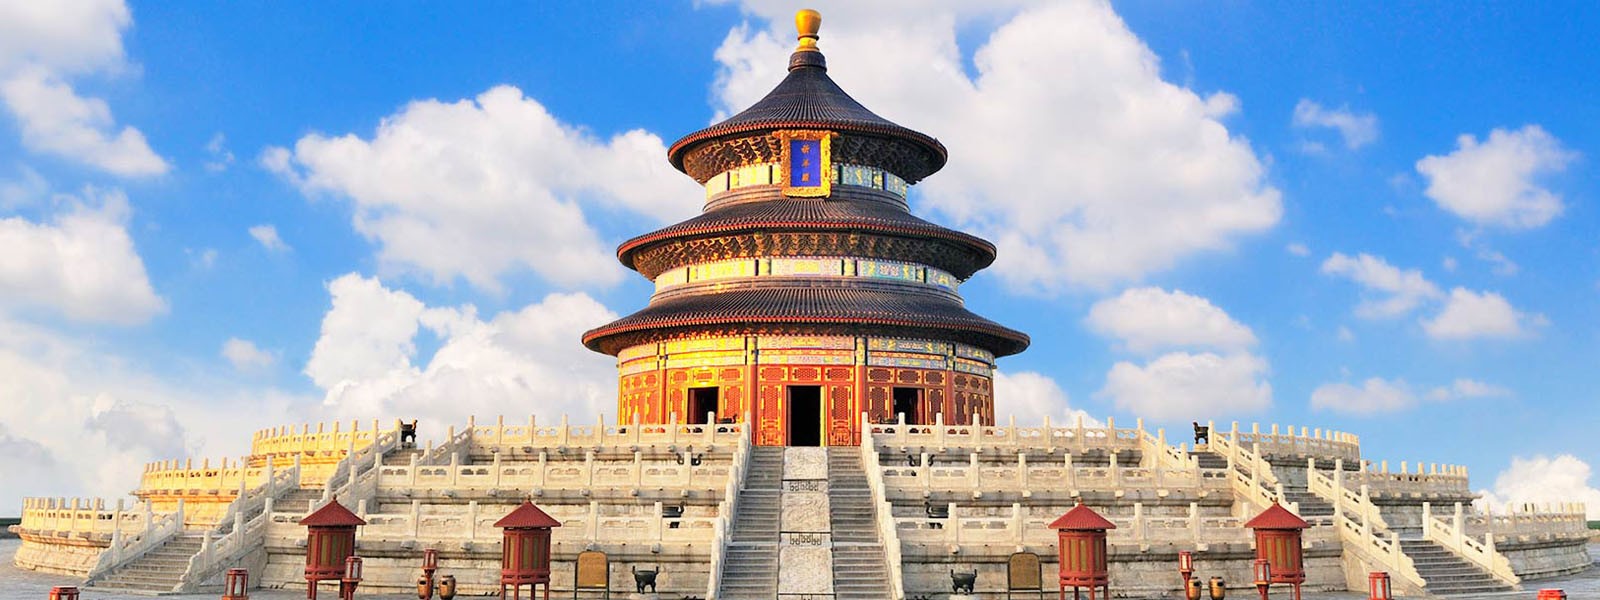 Kathmandu and Lhasa Overland Tour with Beijing Day Tour